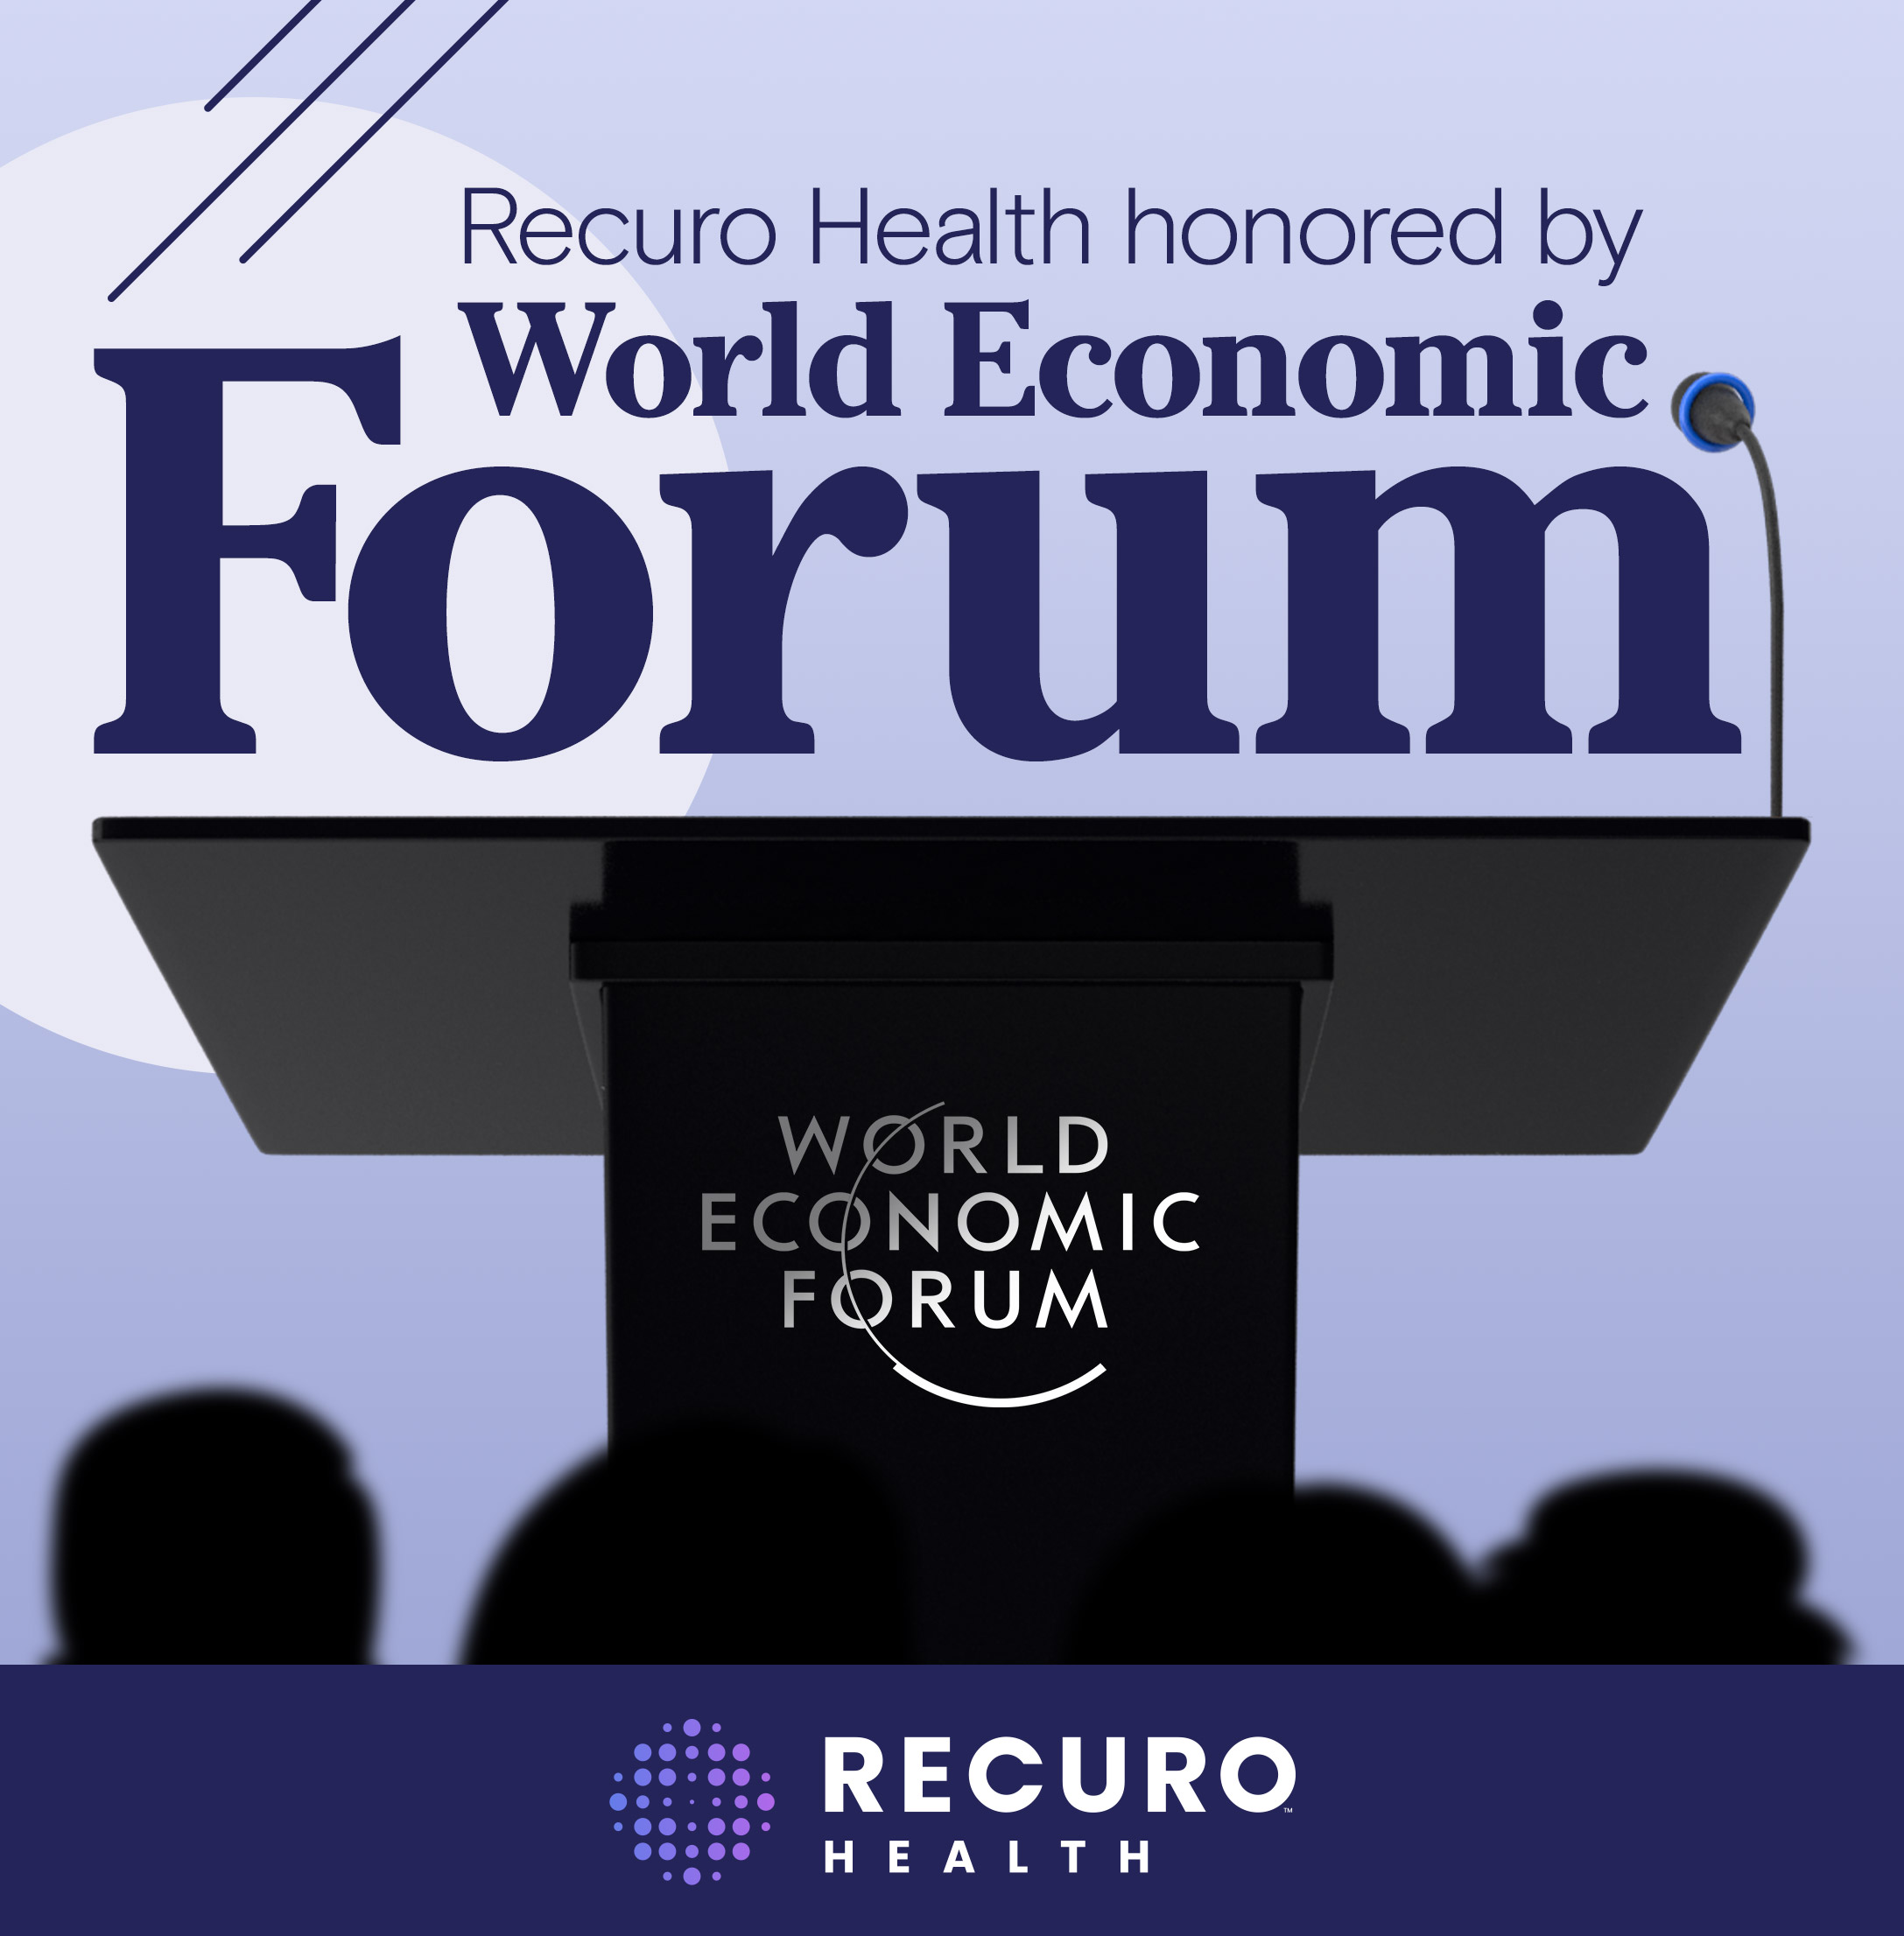 Recuro Health premiada como pionera tecnológica por el Foro Económico Mundial